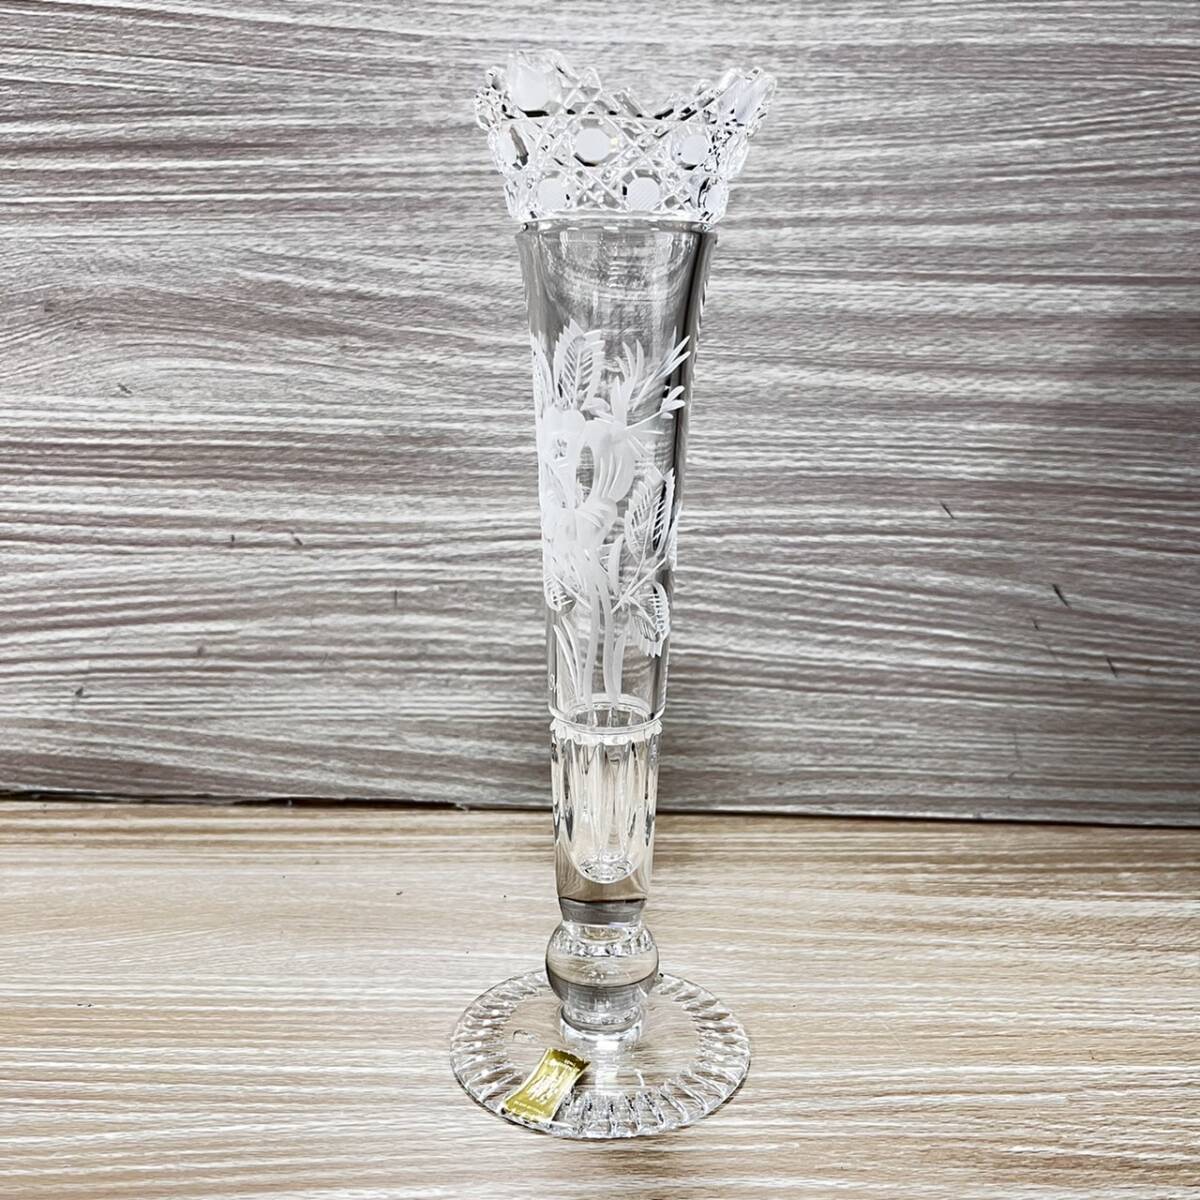  Meissen crystal Meissener Bleikristall ваза цветок основа один колесо . ваза для цветов цветочный принт с коробкой [19390